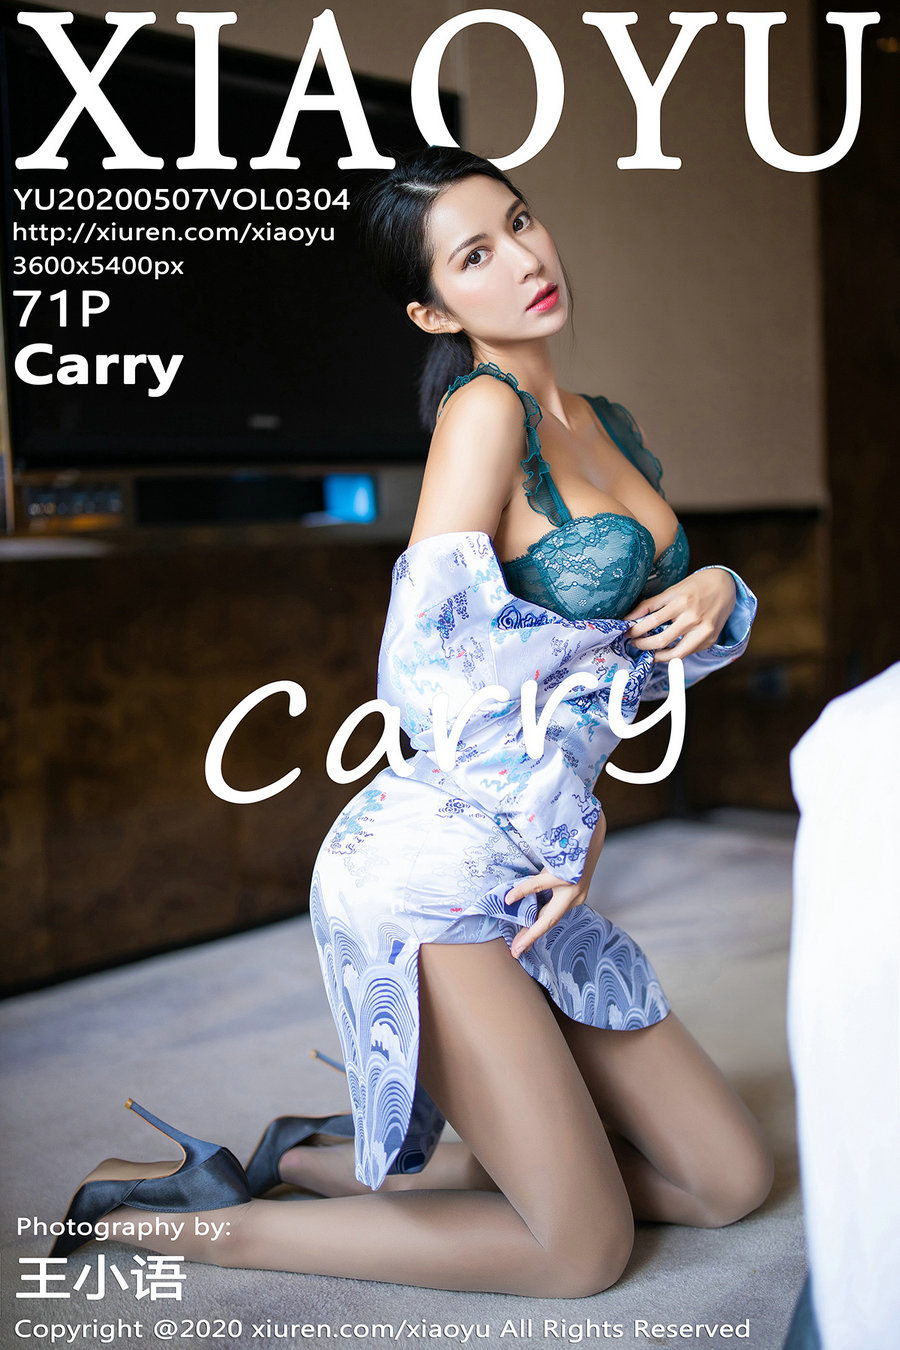 [XIAOYU]语画界 2020.05.07 Vol.304 Carry [71P346MB]